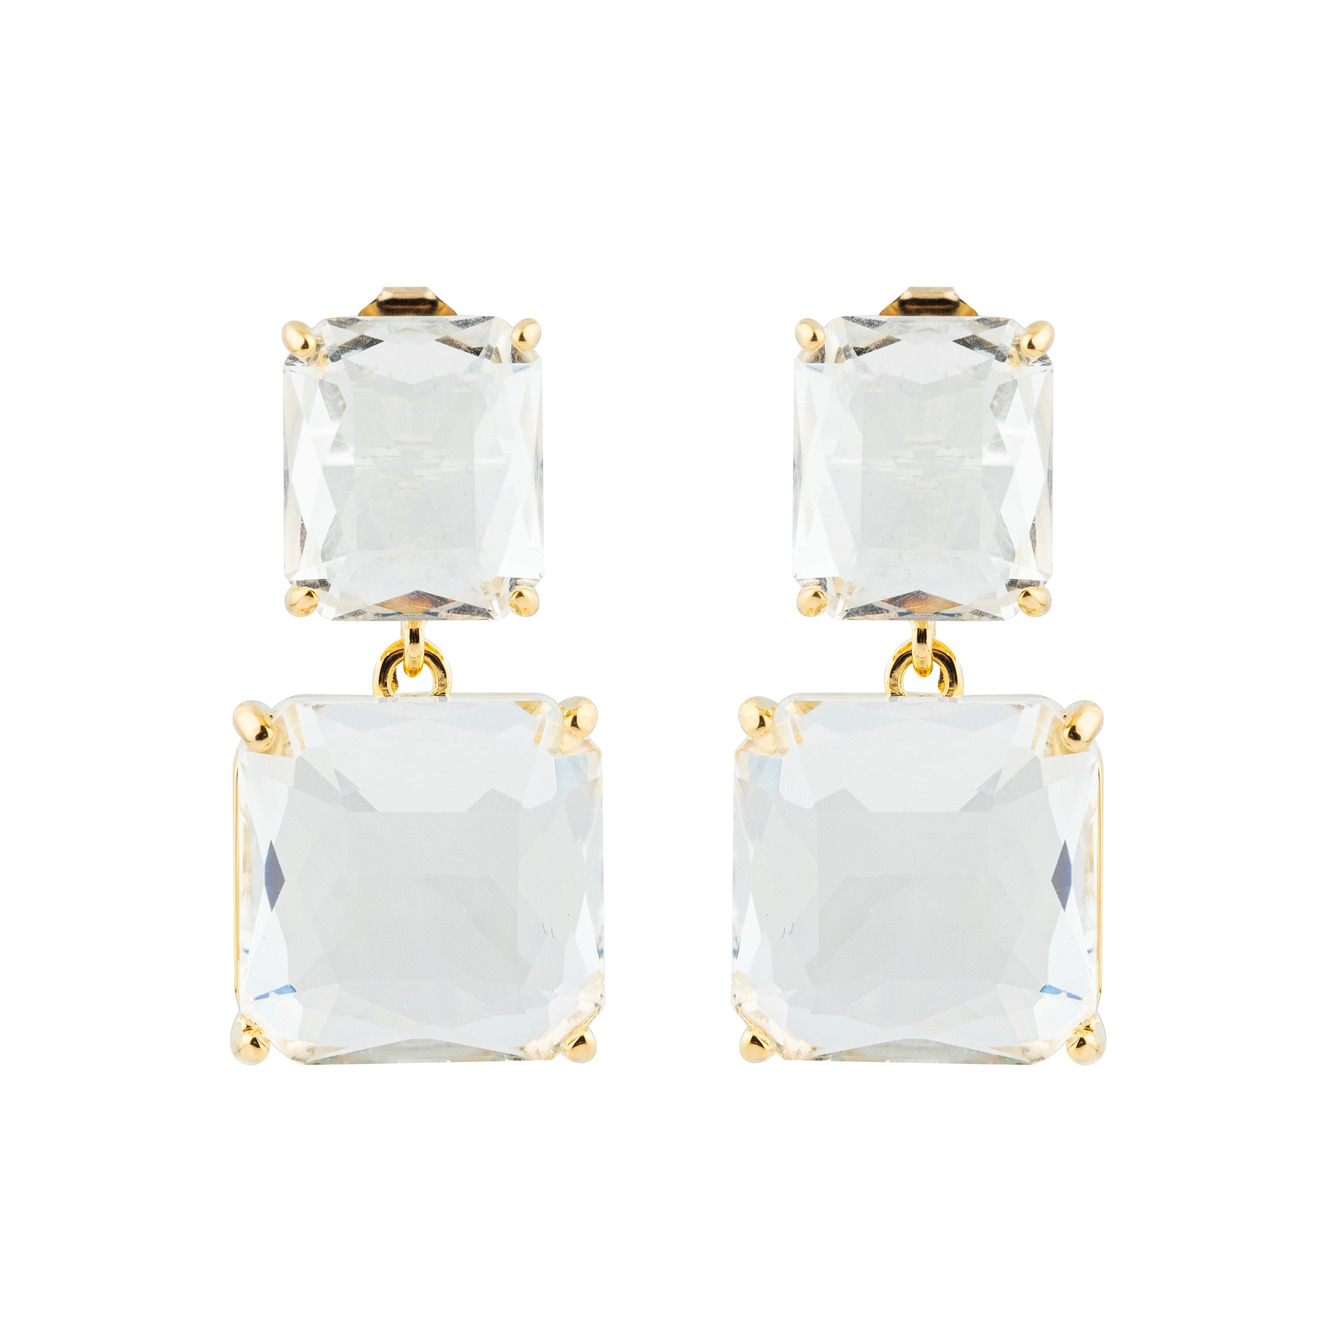 Herald Percy Двойные золотистые серьги с белыми кристаллами herald percy золотистые изогнутые серьги с кристаллами